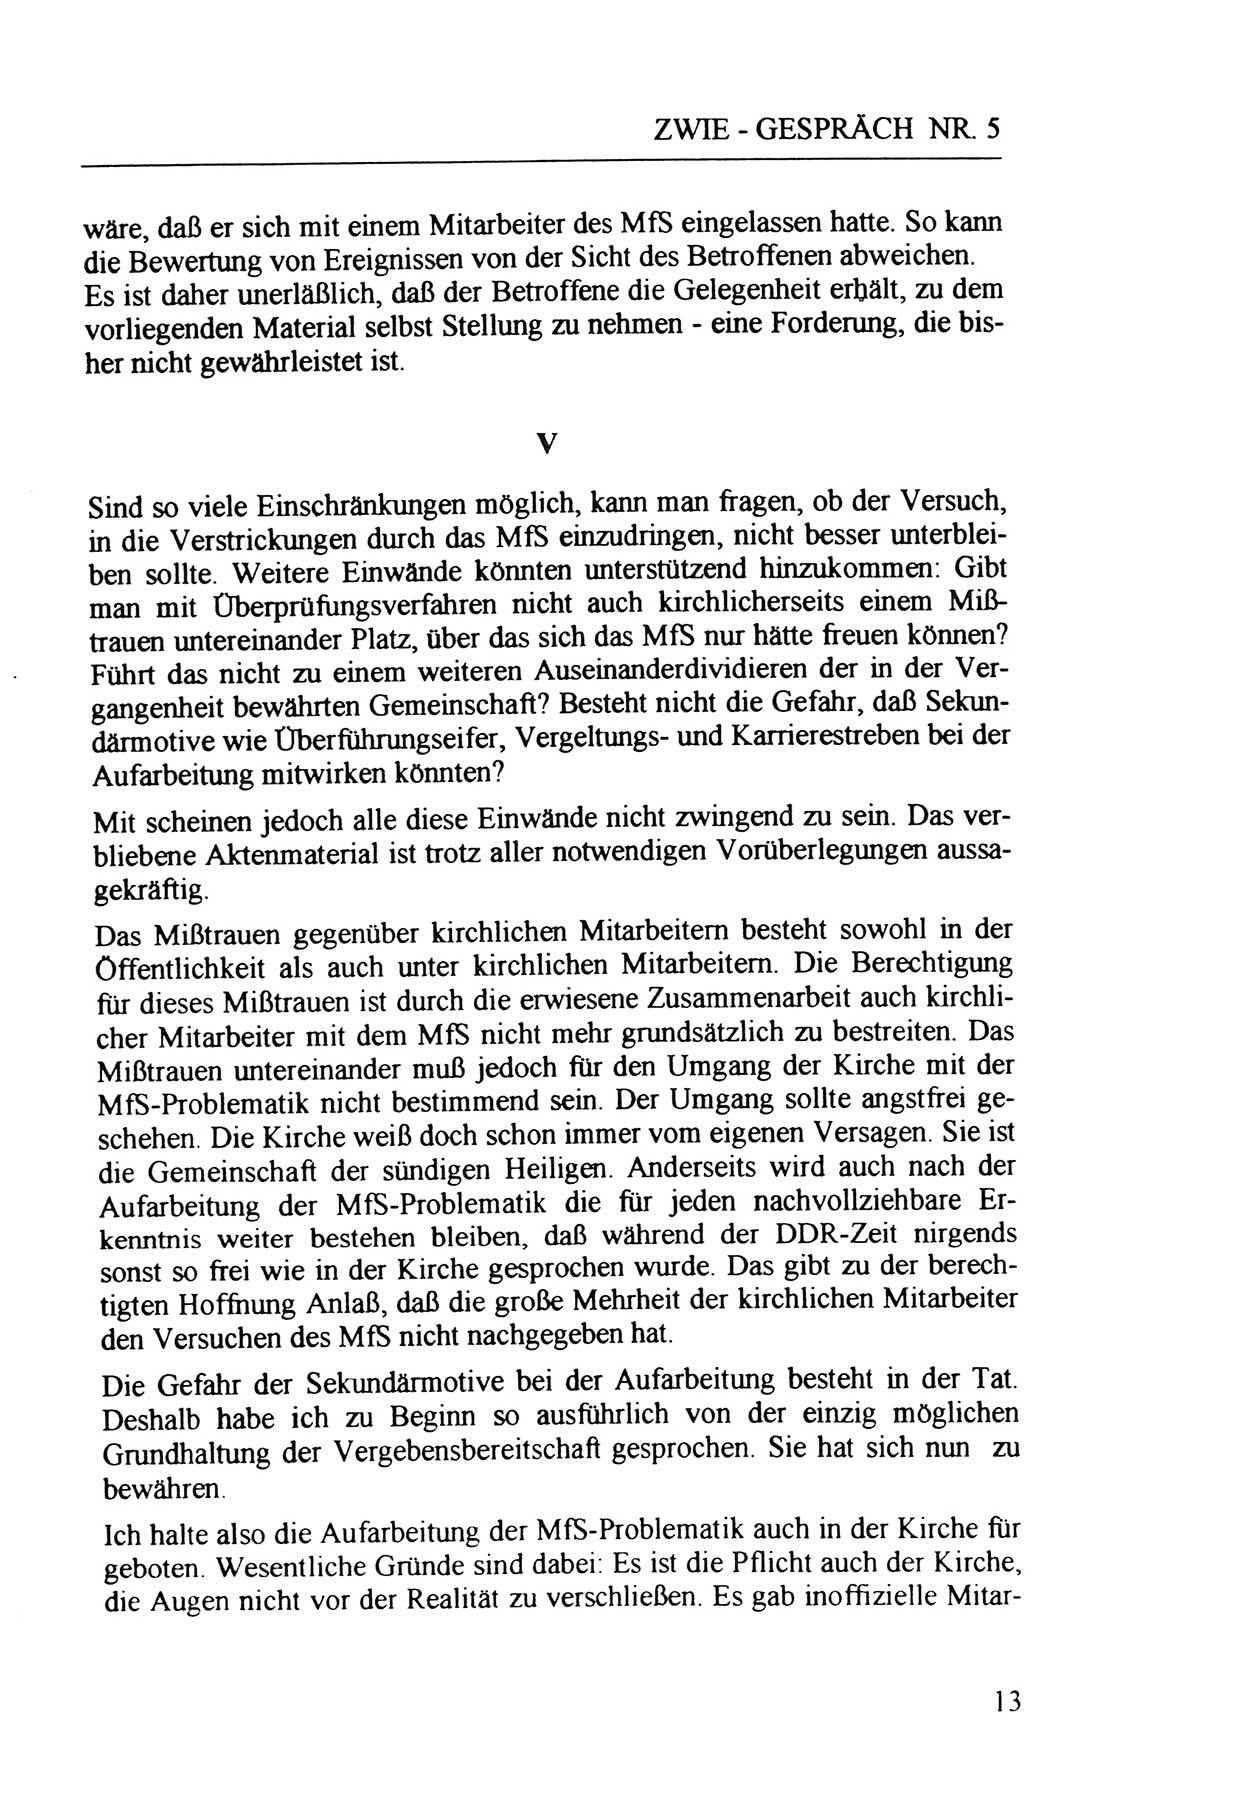 Zwie-Gespräch, Beiträge zur Aufarbeitung der Staatssicherheits-Vergangenheit [Deutsche Demokratische Republik (DDR)], Ausgabe Nr. 5, Berlin 1991, Seite 13 (Zwie-Gespr. Ausg. 5 1991, S. 13)